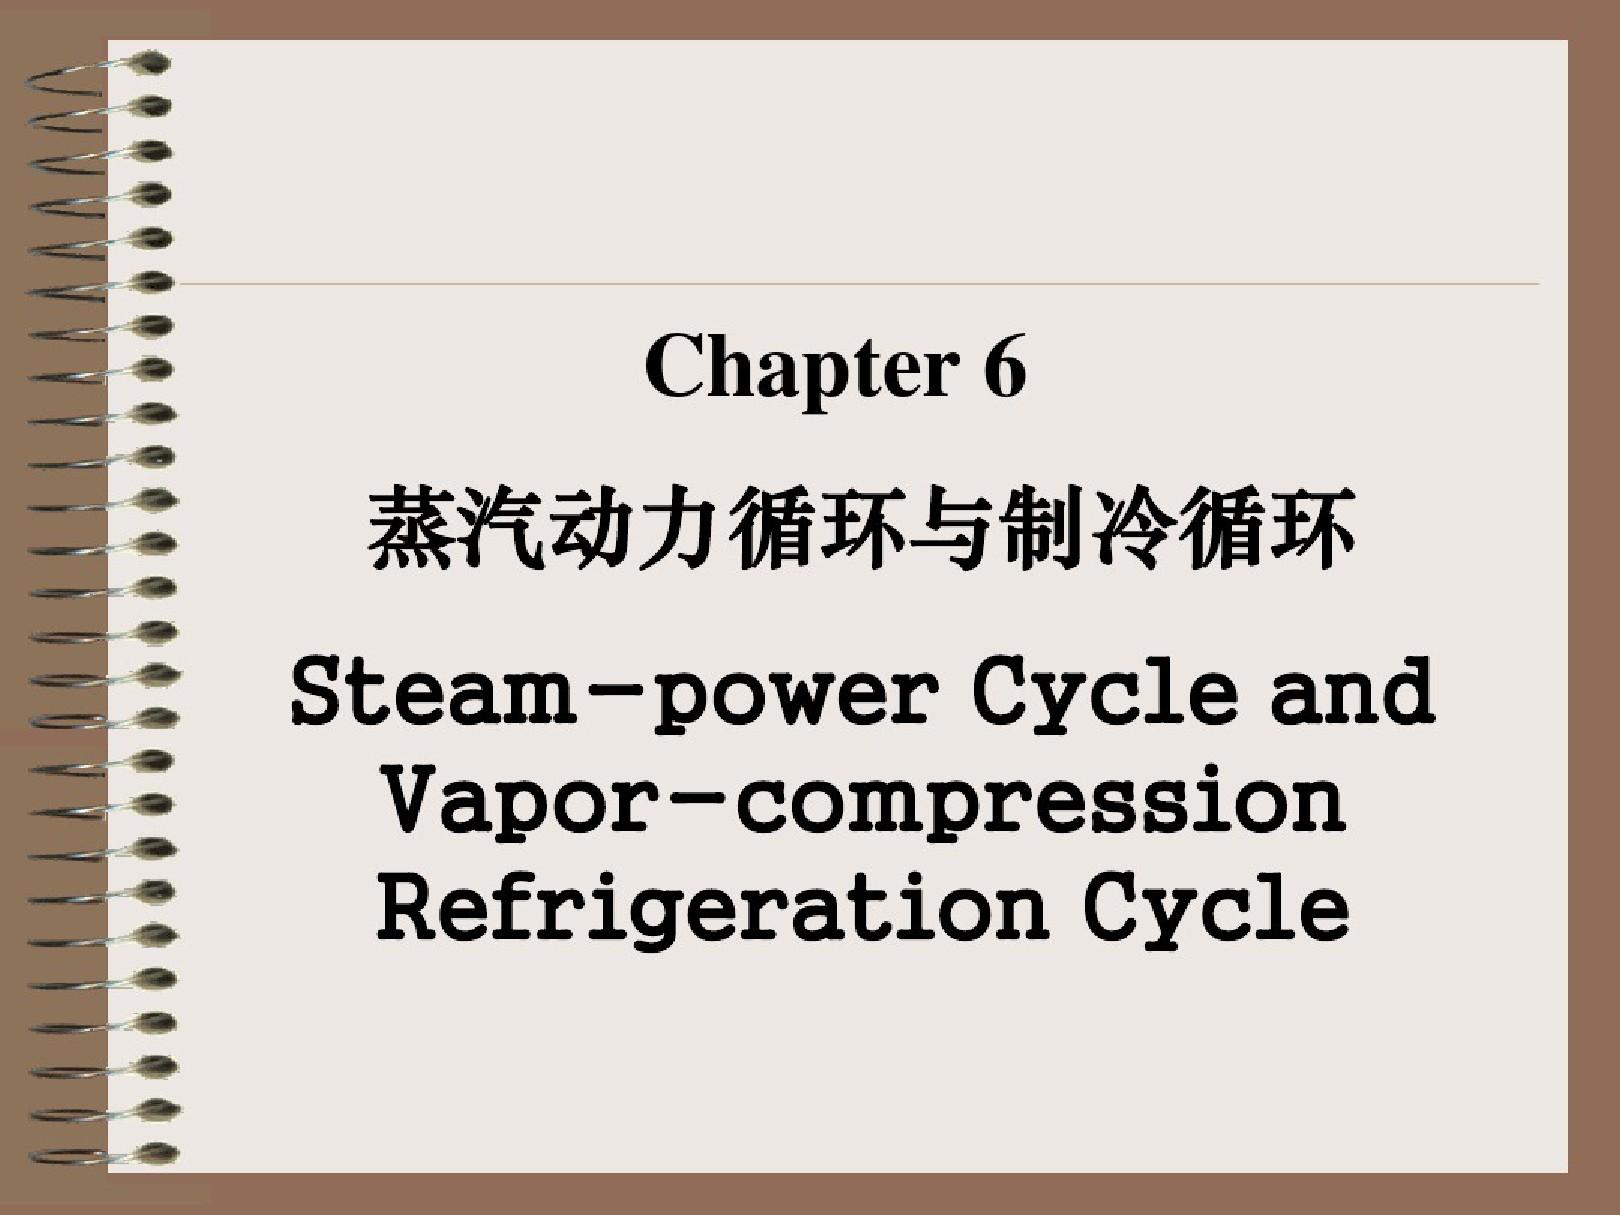 四川大学《化工热力学》PPT课件---6蒸汽动力循环.pdf